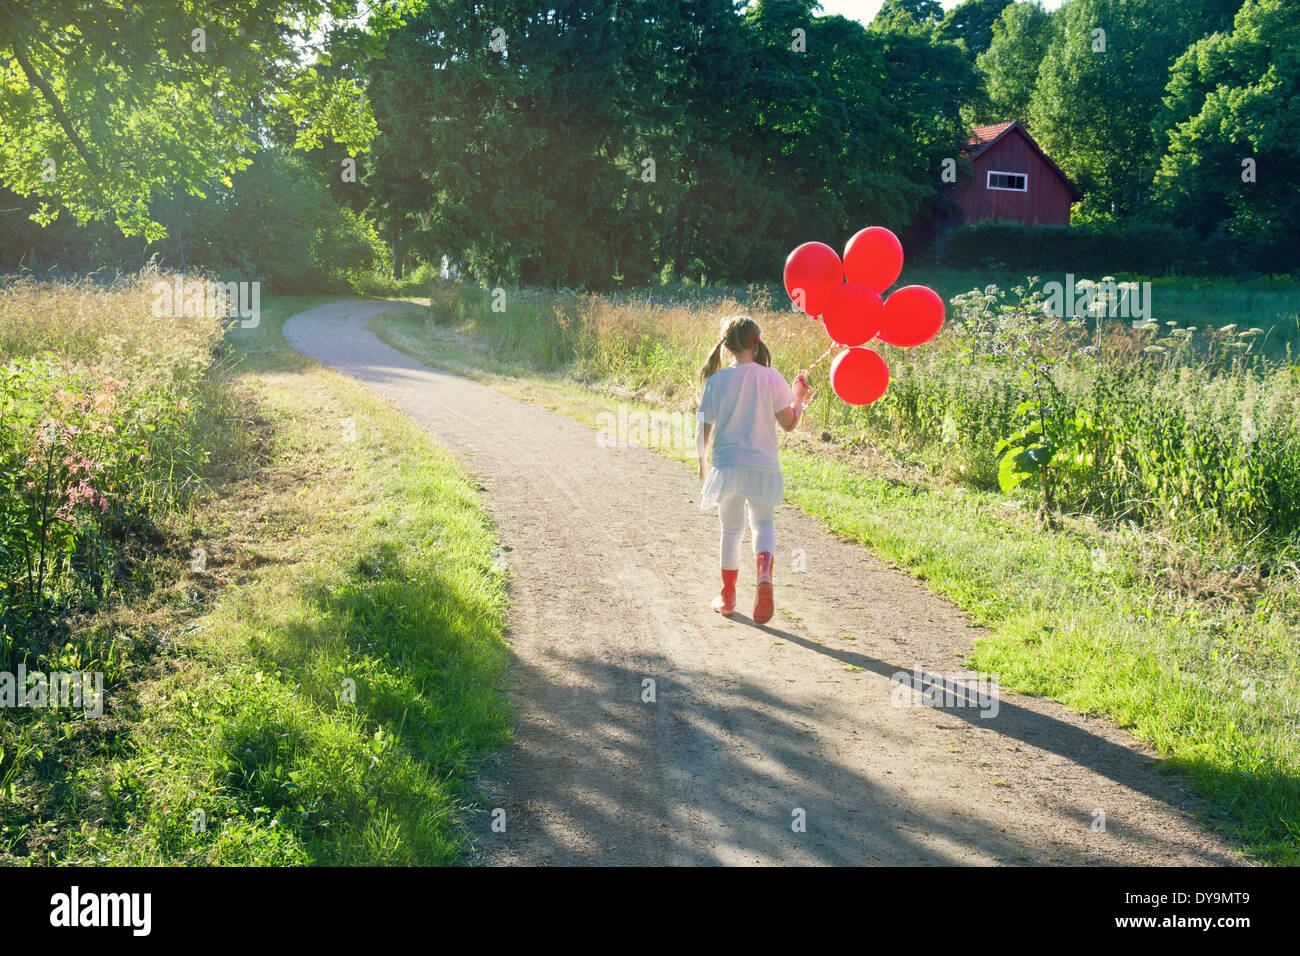 Bambina con un mucchio di palloncini rossi a camminare su una strada di campagna in un verde paesaggio estivo con nebuloso editing vintage Foto Stock